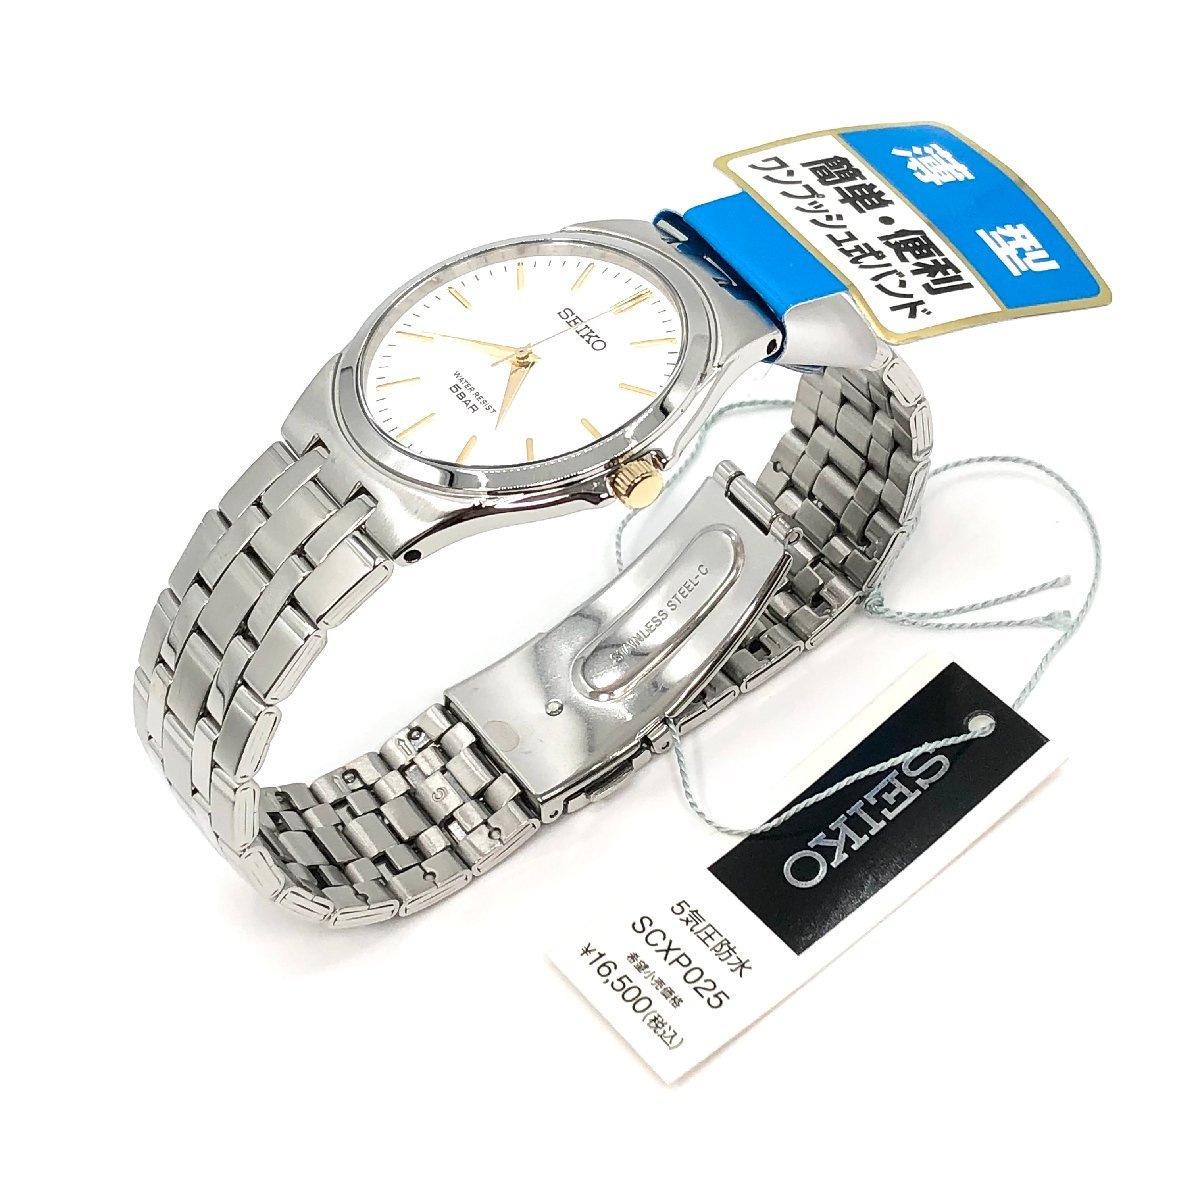 新品正規品『SEIKO SELECTION』セイコー セレクション 薄型腕時計 メンズ SCXP025【送料無料】_画像7